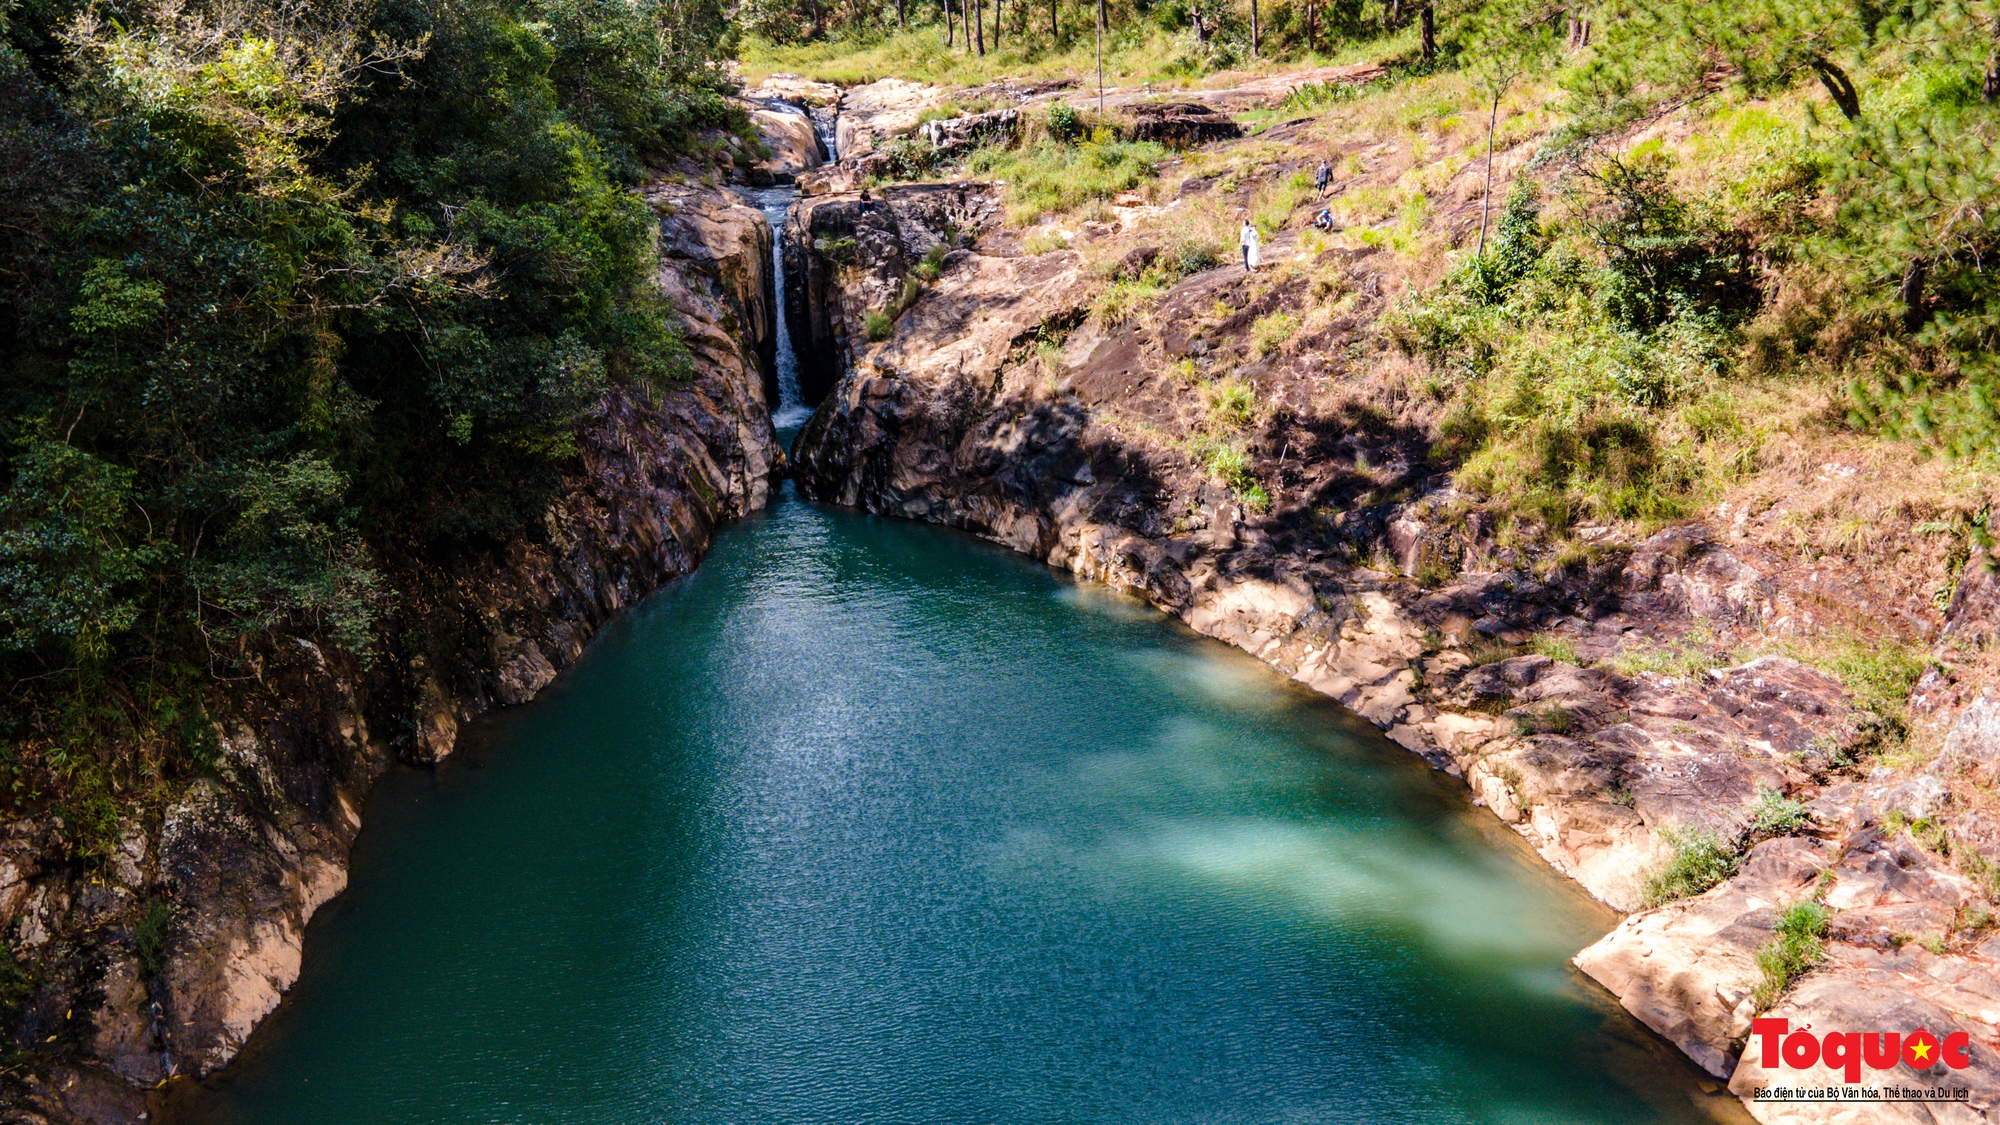 Thác Ankroet - Khám phá mạnh mẽ sức mạnh tự nhiên tại thác Ankroet. Nhiều dòng nước chảy từ trên cao, tạo ra cảnh tượng rực rỡ đến chói mắt. Hãy tới đây để tận hưởng giây phút thư giãn trong không gian thoáng đãng, trong lành bên dòng suối mát rượi.